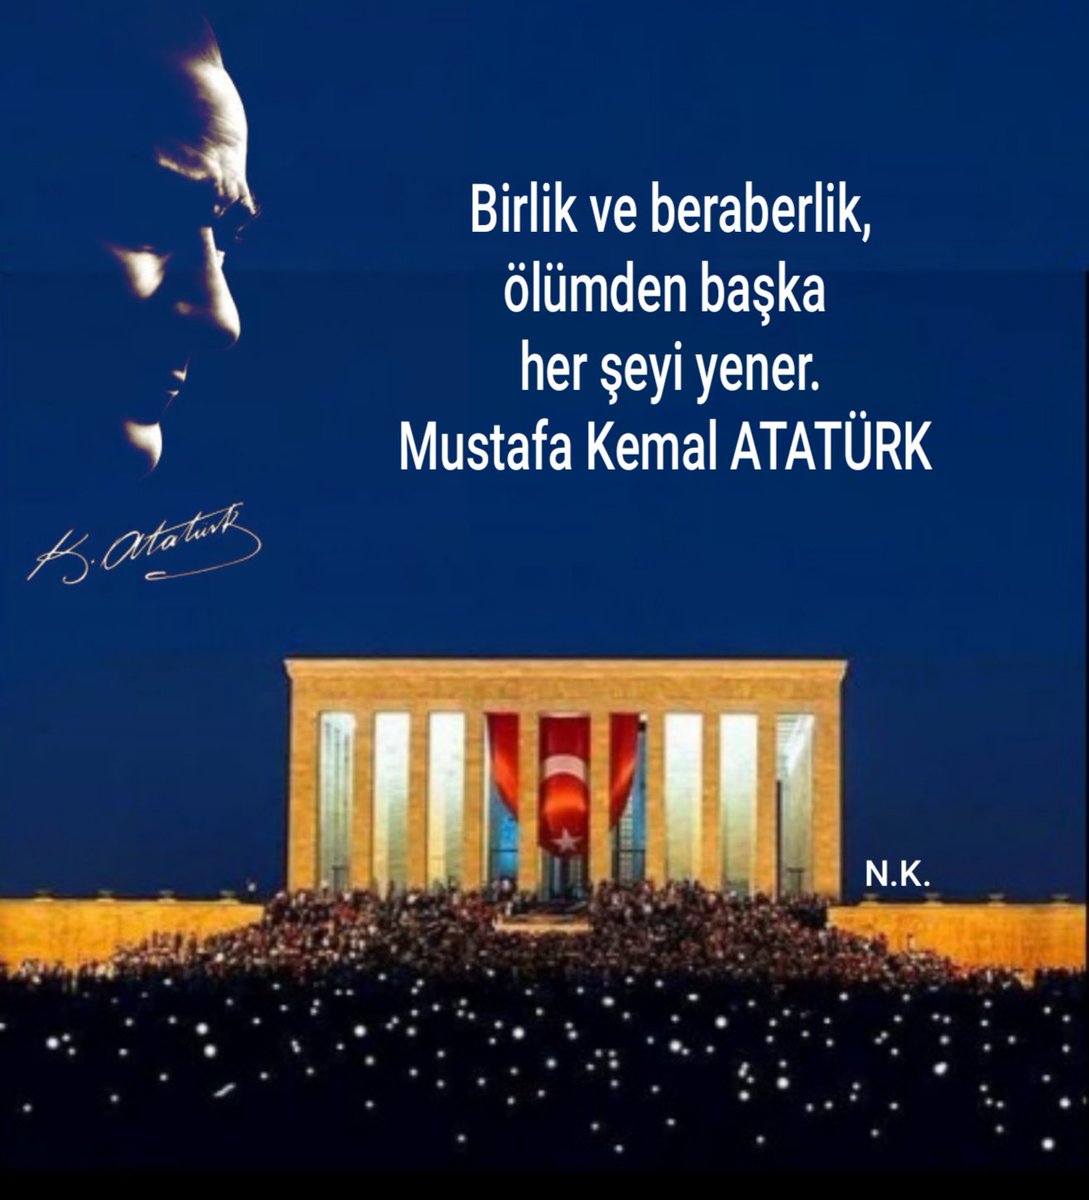 Ölümsüzlüğün adıdır Mustafa Kemal ATATÜRK 🇹🇷❤🇹🇷
#izindeyizatam  #10kasim  #Atatürk